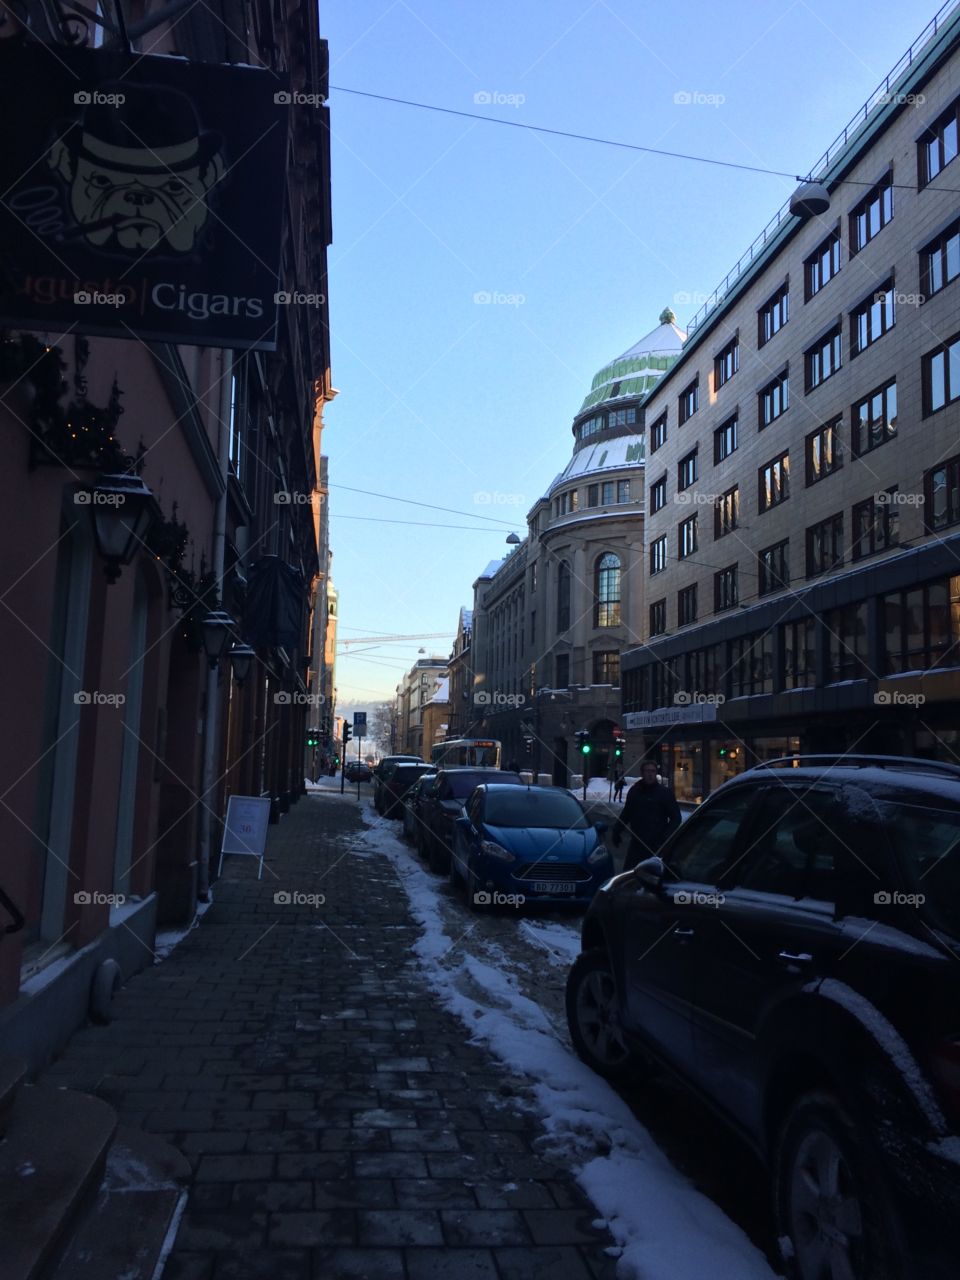 Street in the winter in Oslo, Norway
